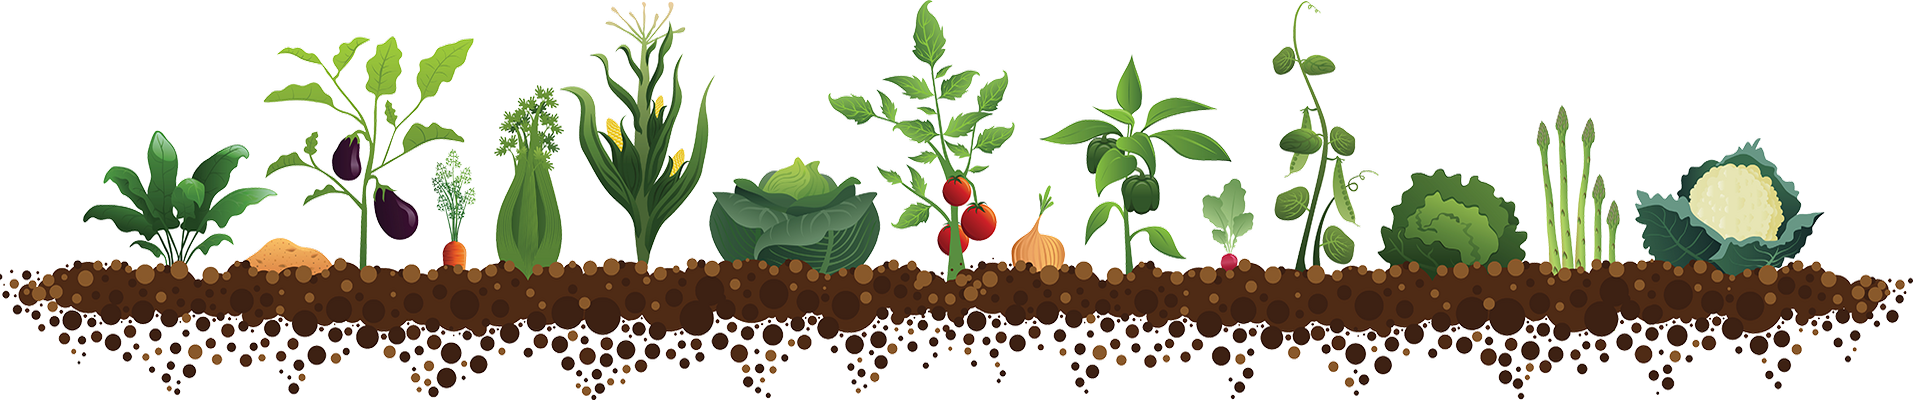 Посів насіння салату навесні 2020 коли садити в грунт, сіяти, саджати, місячний календар посадок